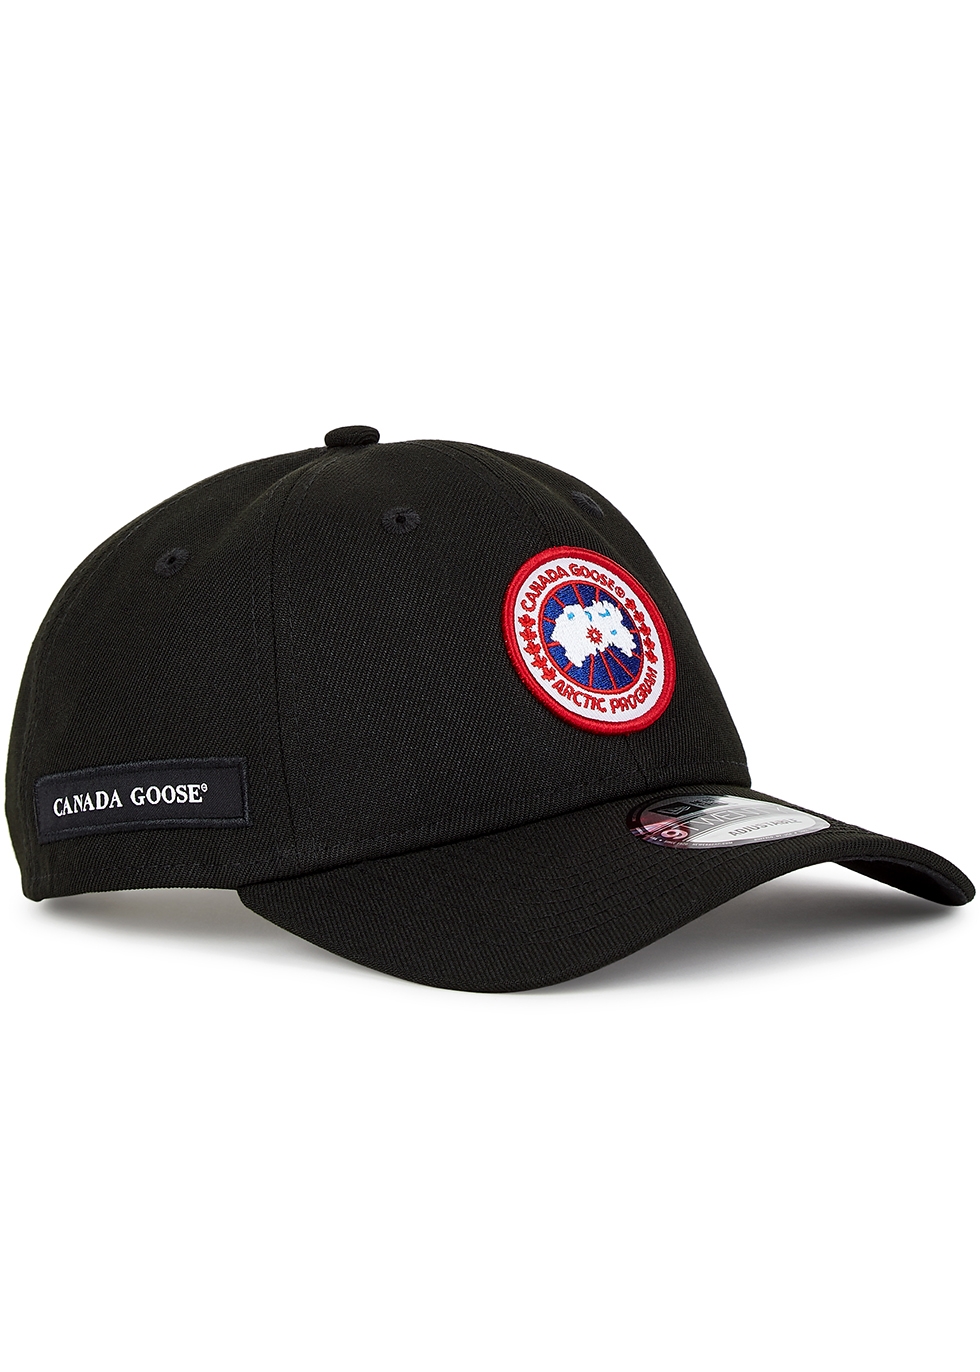 Arctic black logo twill cap